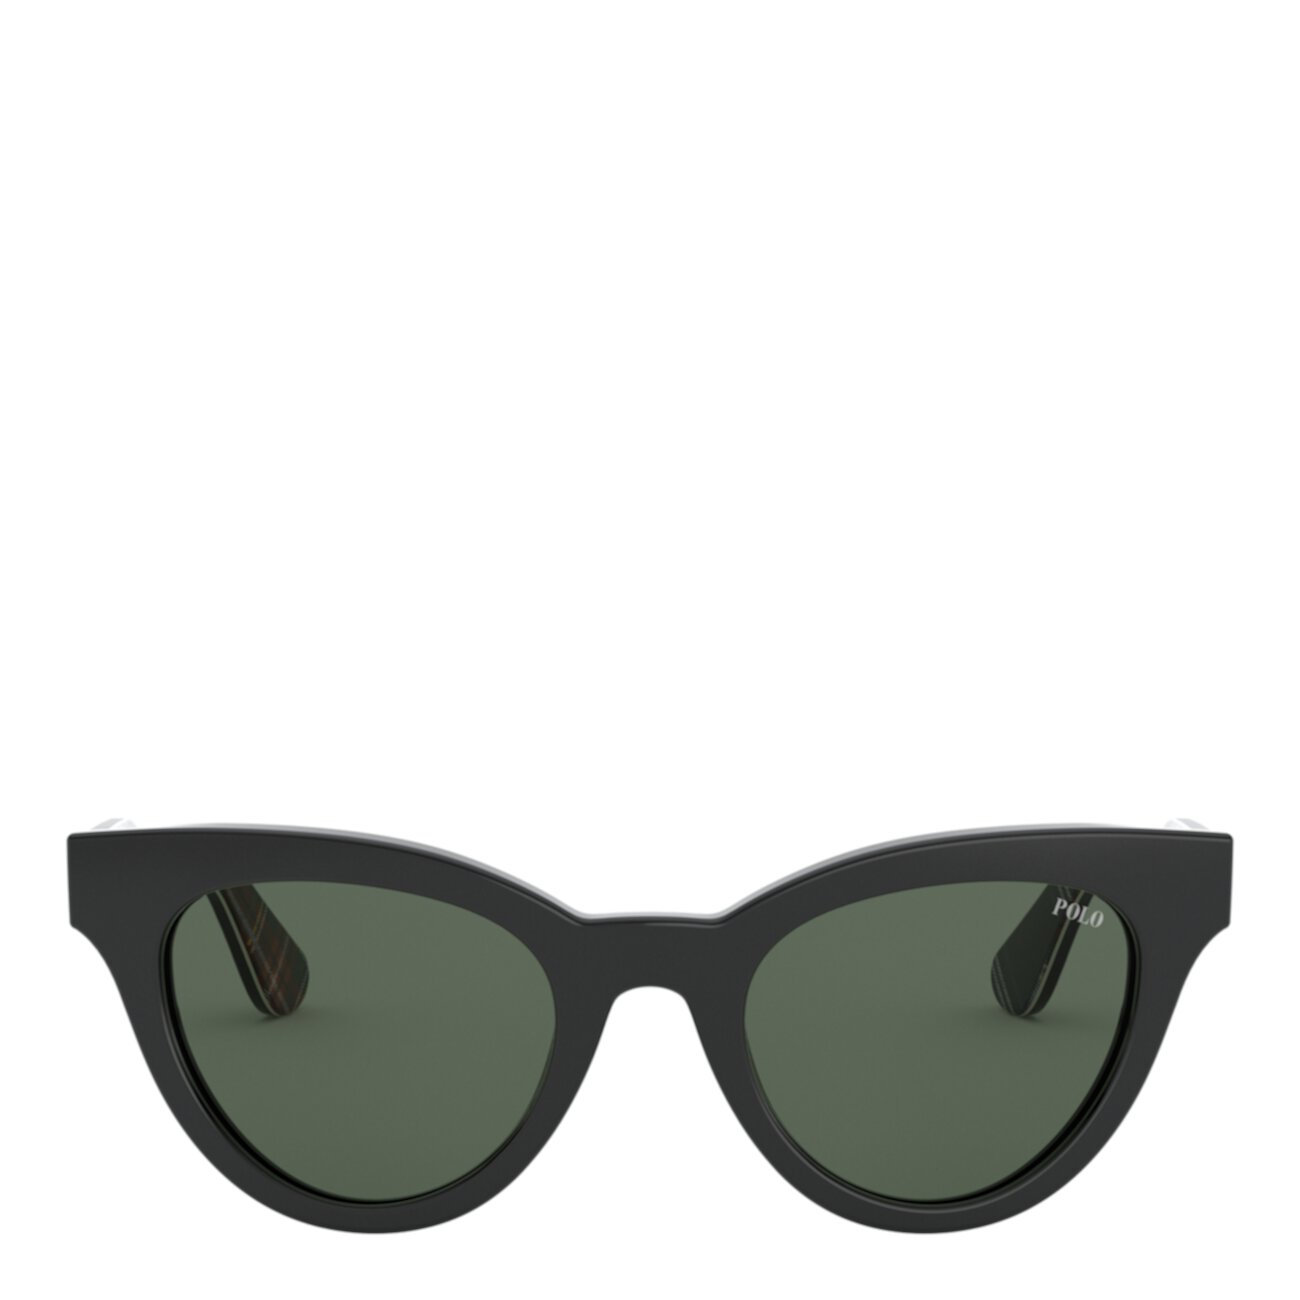 Модные солнцезащитные очки Cat-Eye Size Ralph Lauren